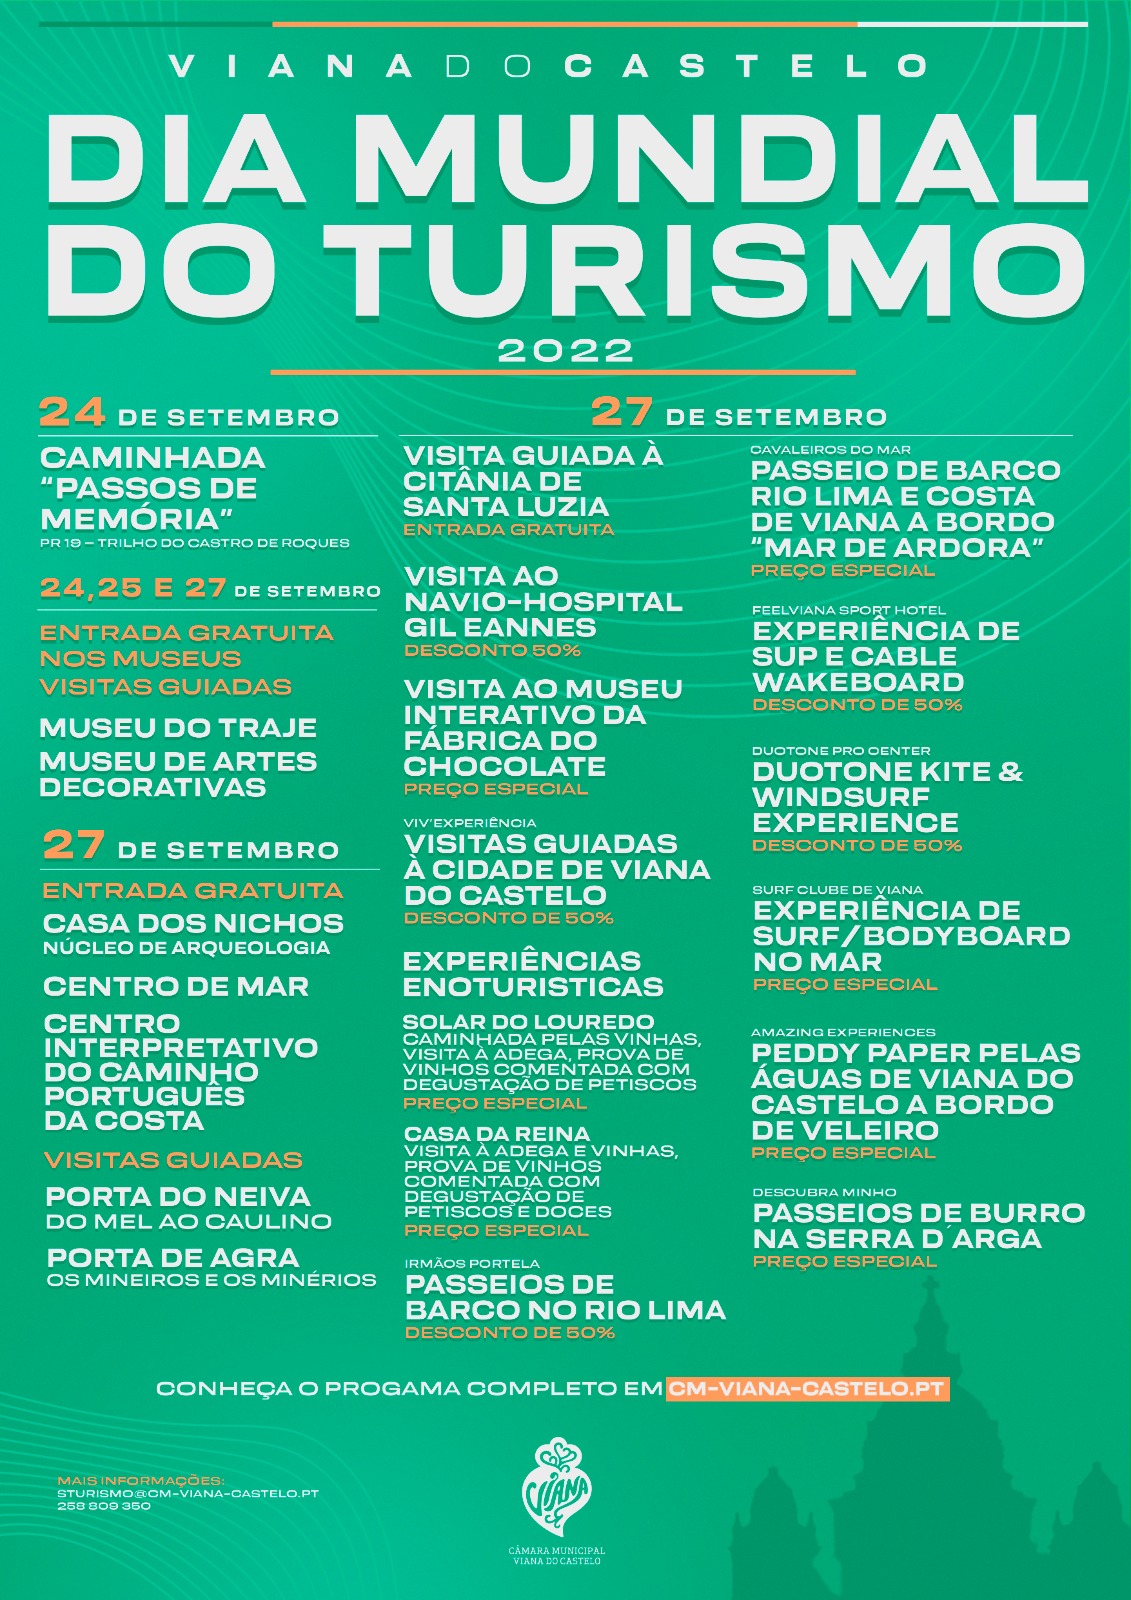 Viana do Castelo assinala Dia Mundial do Turismo com diversas iniciativas e entradas gratuitas